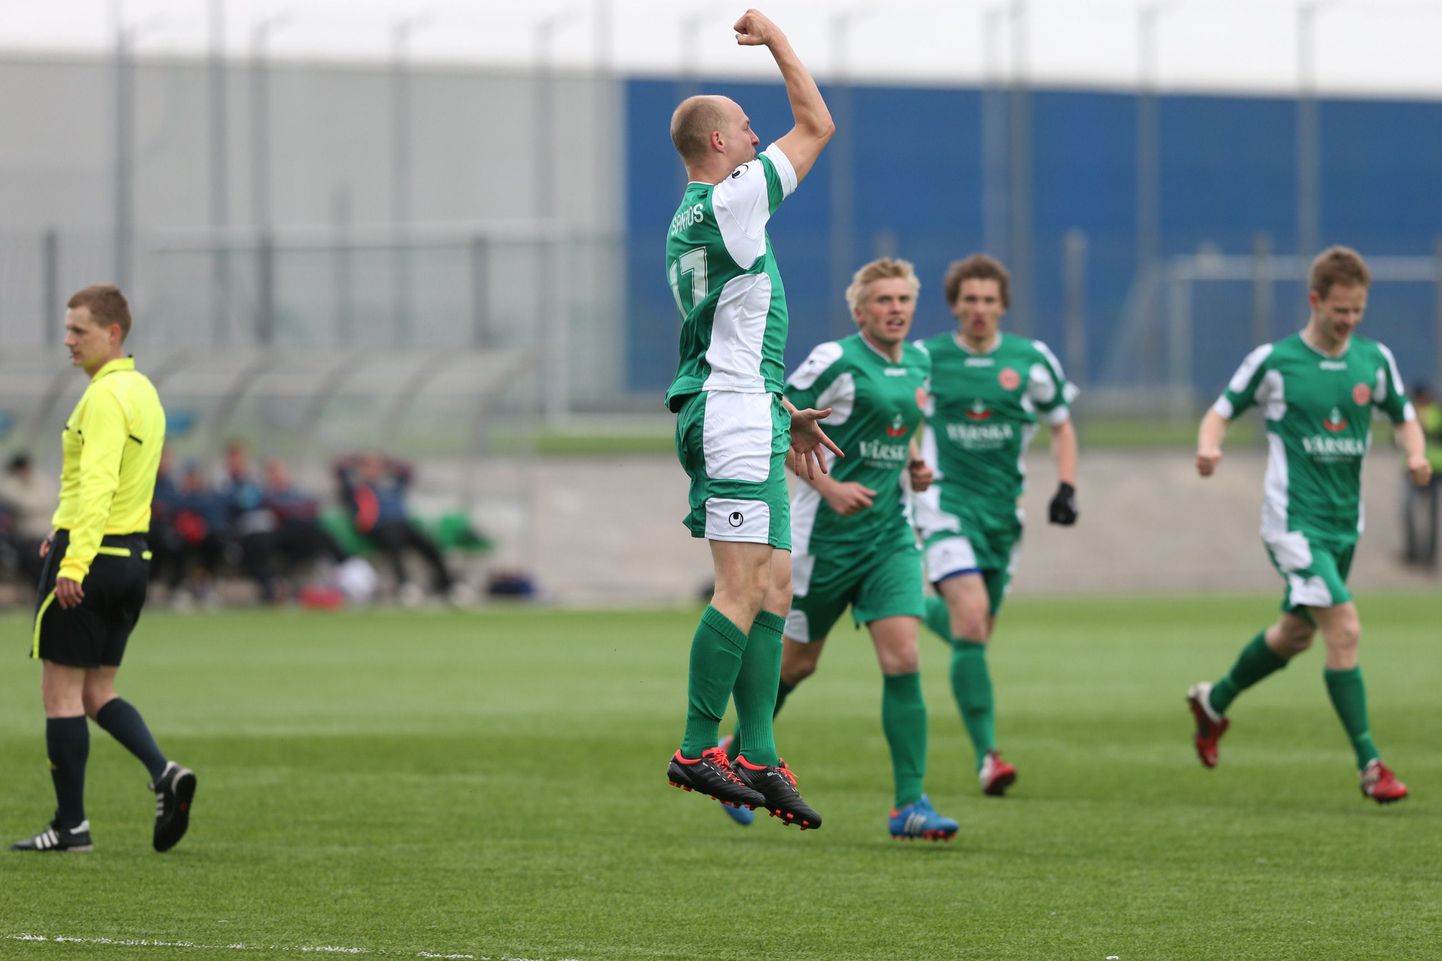 Eesti jalgpalli karikavõistluste poolfinaalis olid vastamisi tugevuselt kolmanda liiga tiimid HÜJK Emmaste ning Tartu FC Santos. Santos võttis 3:1 võidu.